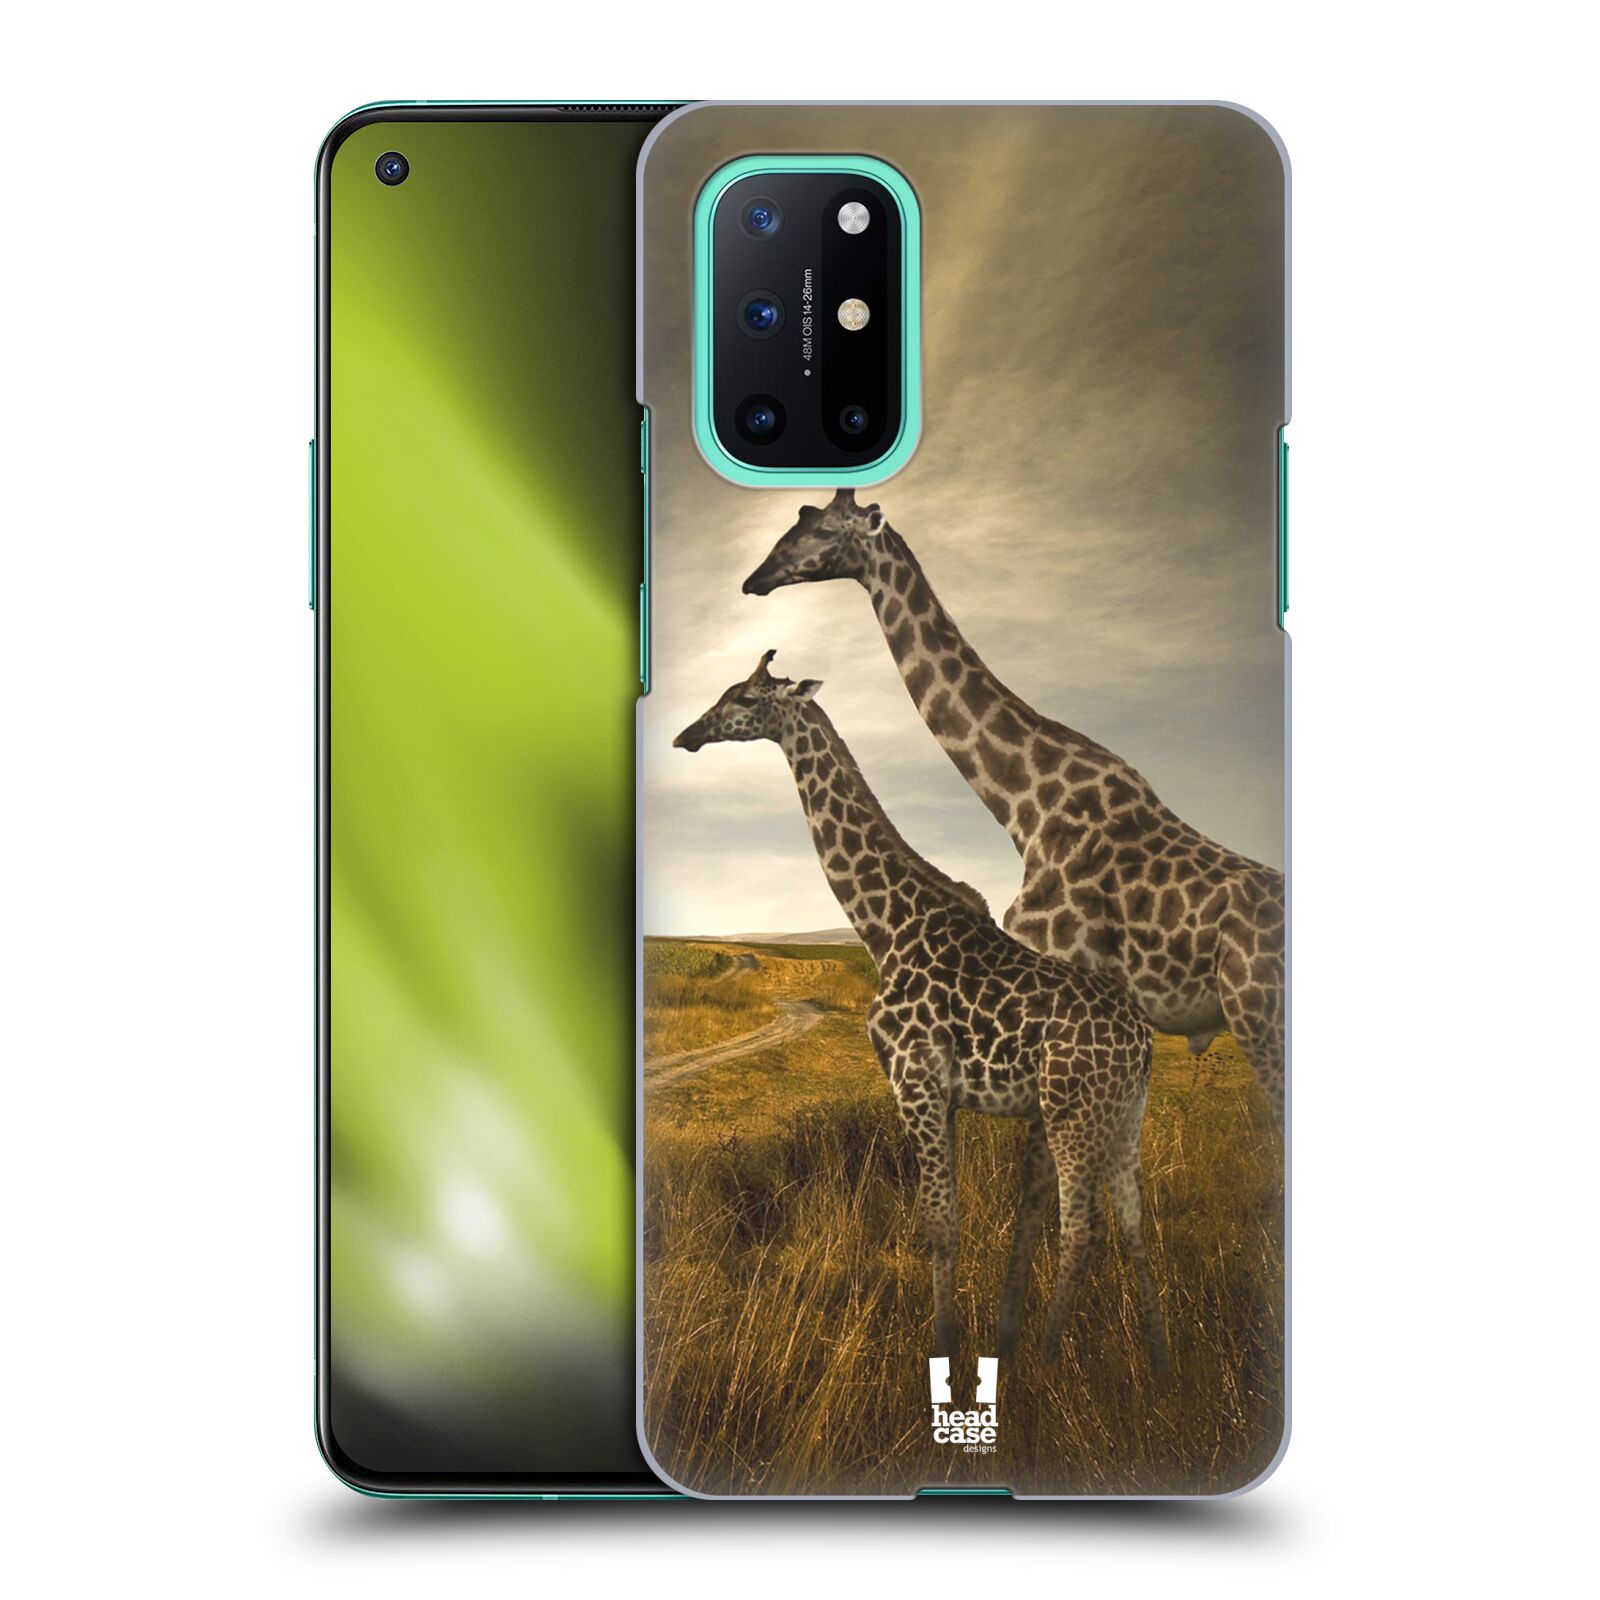 Zadní obal pro mobil OnePlus 8T - HEAD CASE - Svět zvířat žirafy